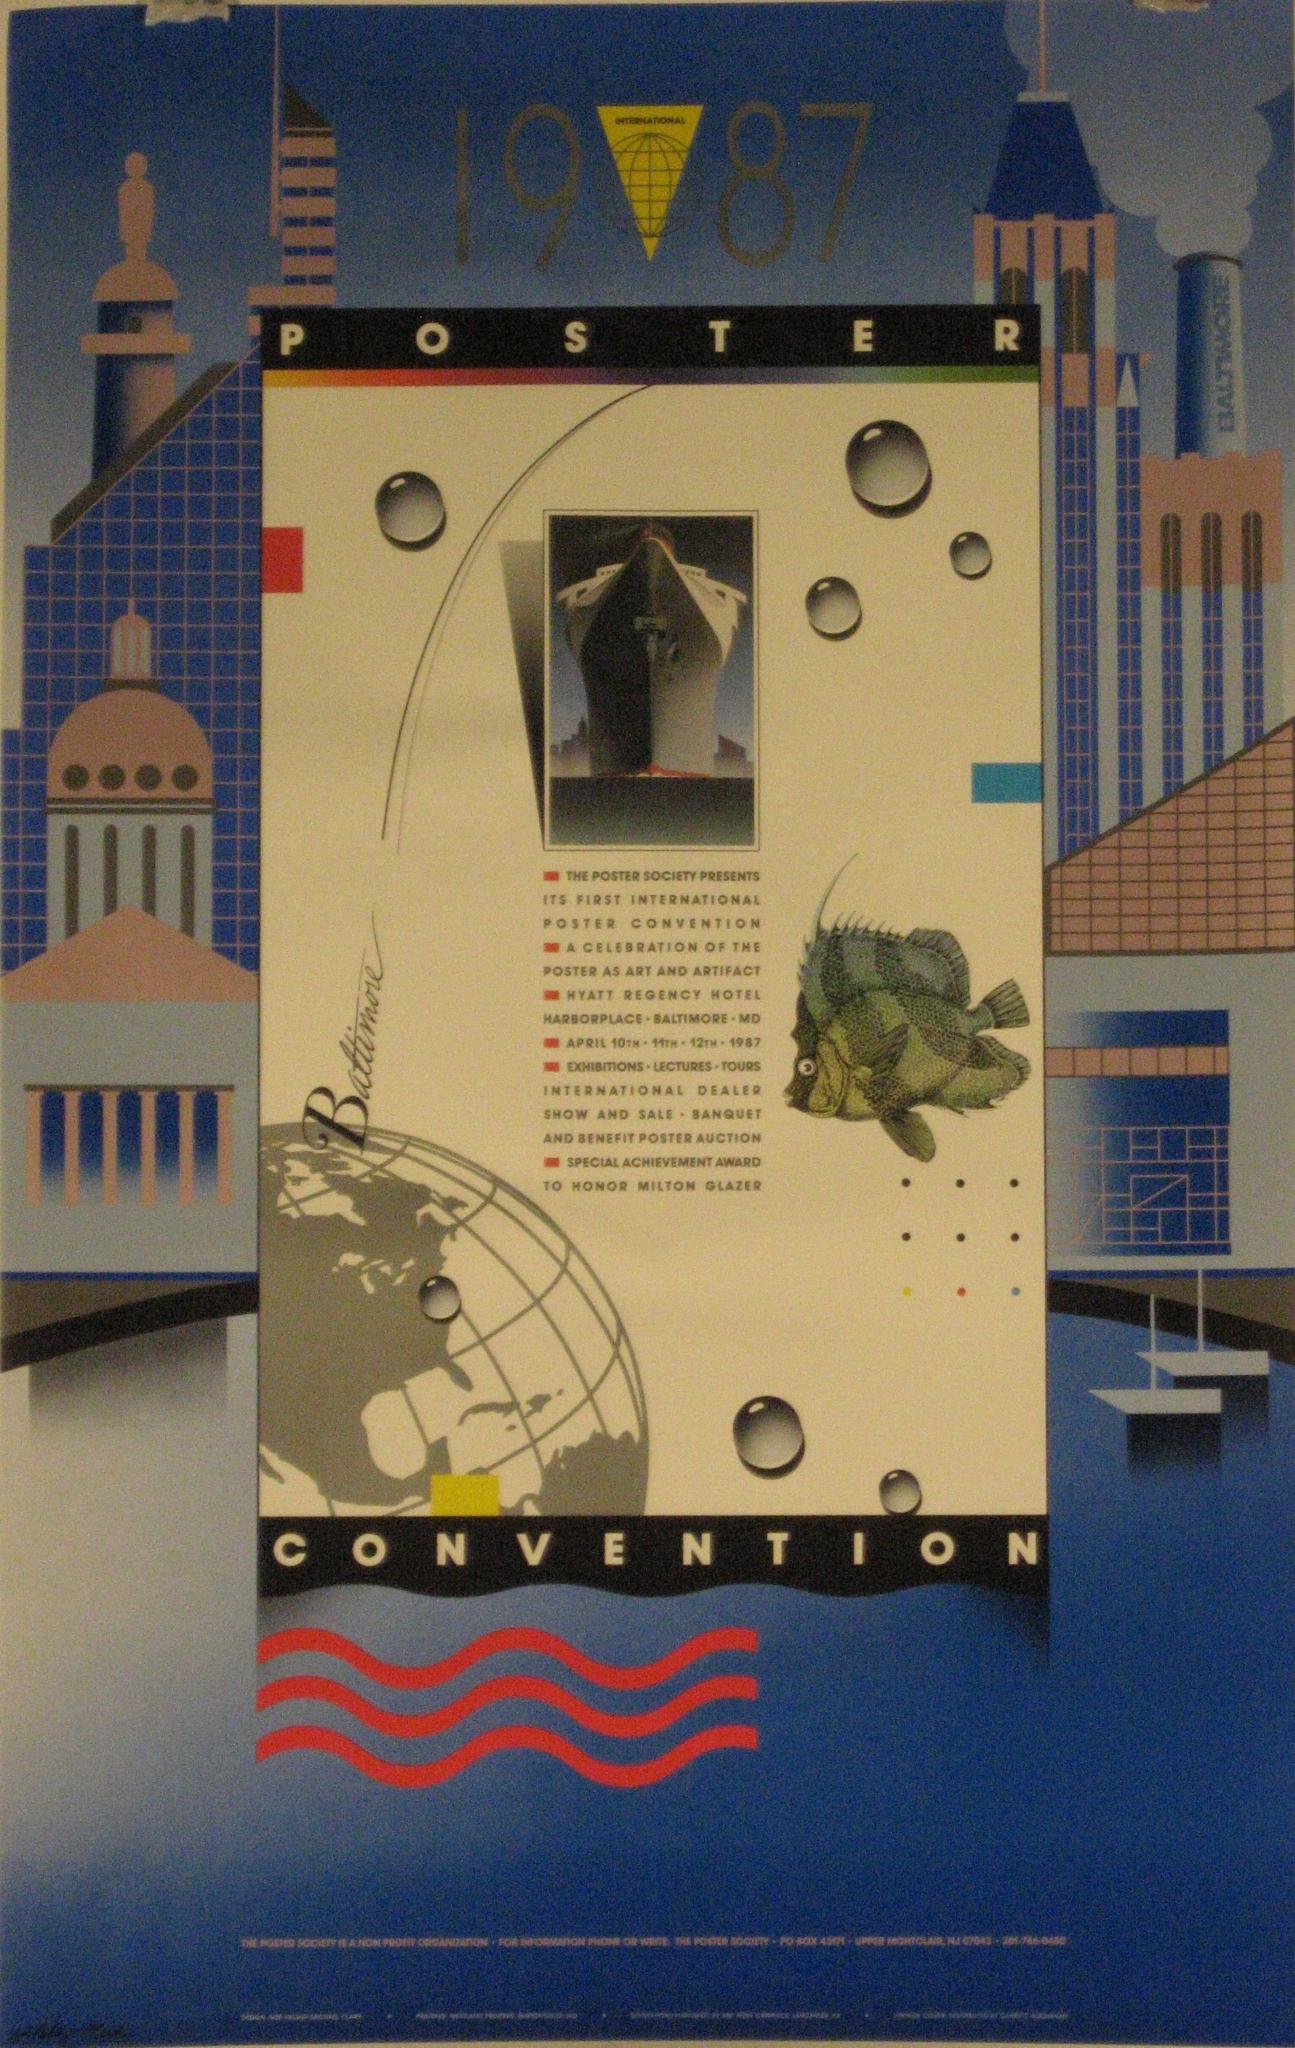 Künstler: Unleserlich

Ursprungsdatum: 1987

Medium: Original Offsetlithographie Vintage Poster

Größe: 24